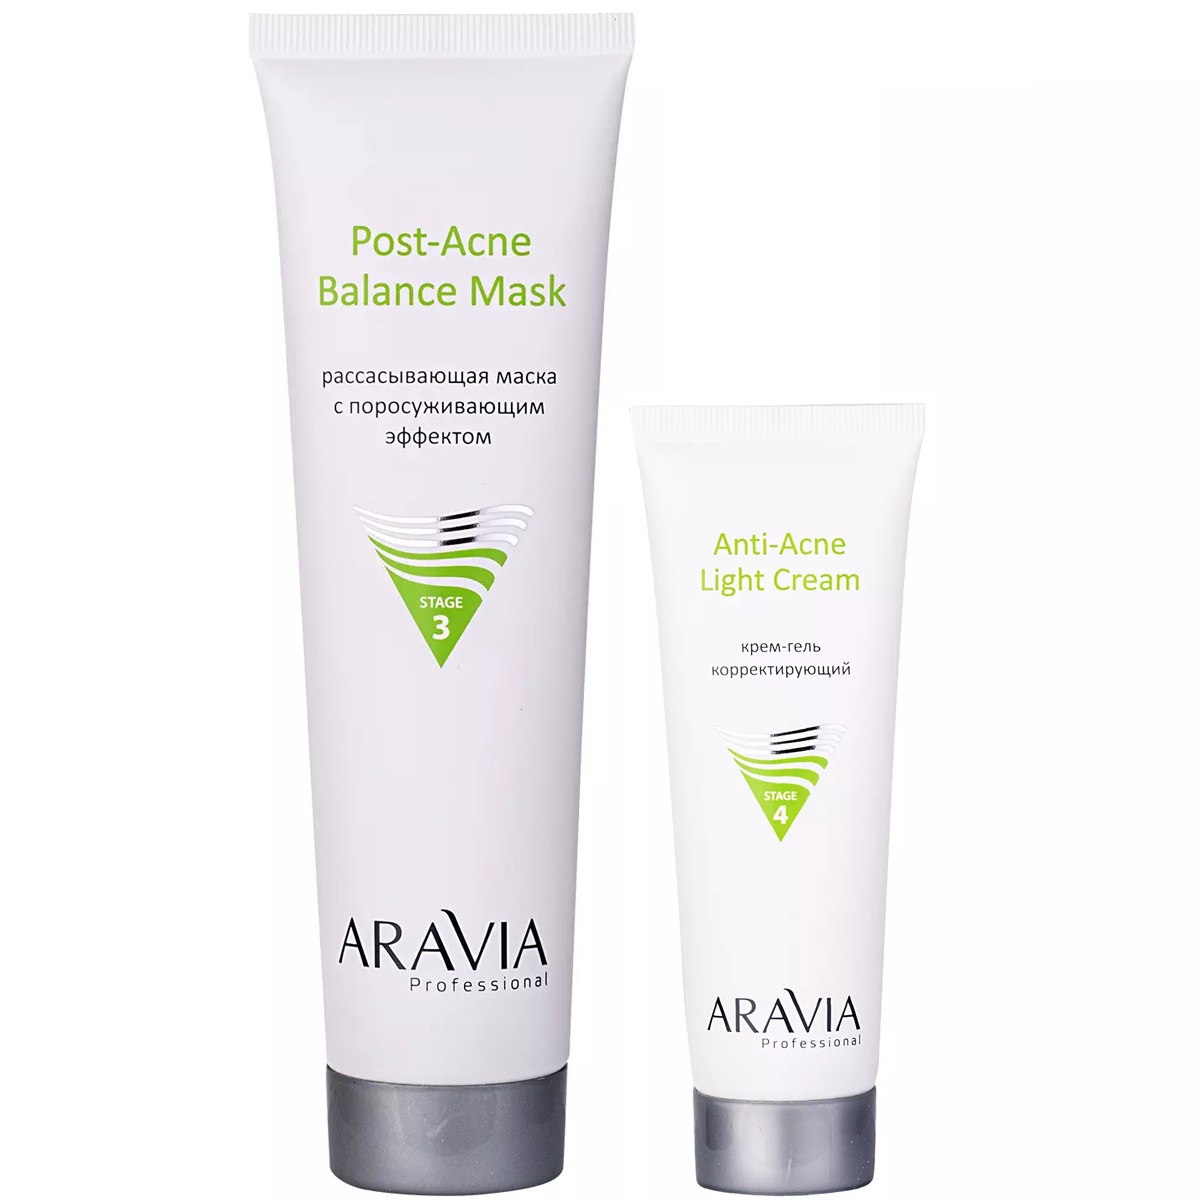 Aravia Professional Набор для проблемной и жирной кожи: маска, 100 мл + крем-гель, 50 мл (Aravia Professional, Уход за лицом) маска для лица plazan крем маска для жирной и проблемной кожи